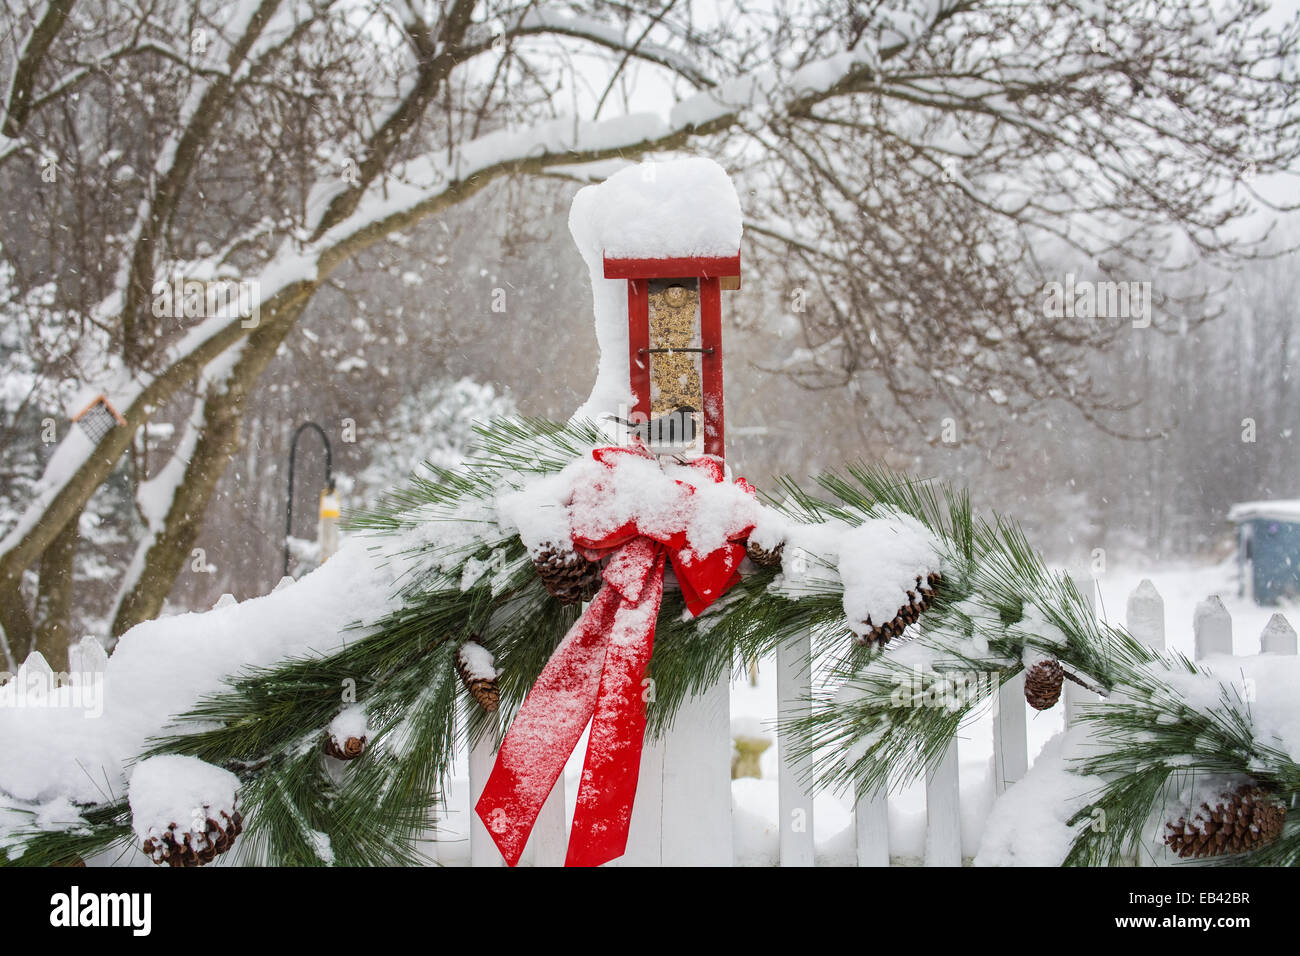 Jardin d'hiver mangeoire à oiseaux et décorations de Noël rouges mangeoire à oiseaux de jardin, clôture de piquetage blanche avec guirlande et neige, Monroe Twp., New Jersey, États-Unis Banque D'Images